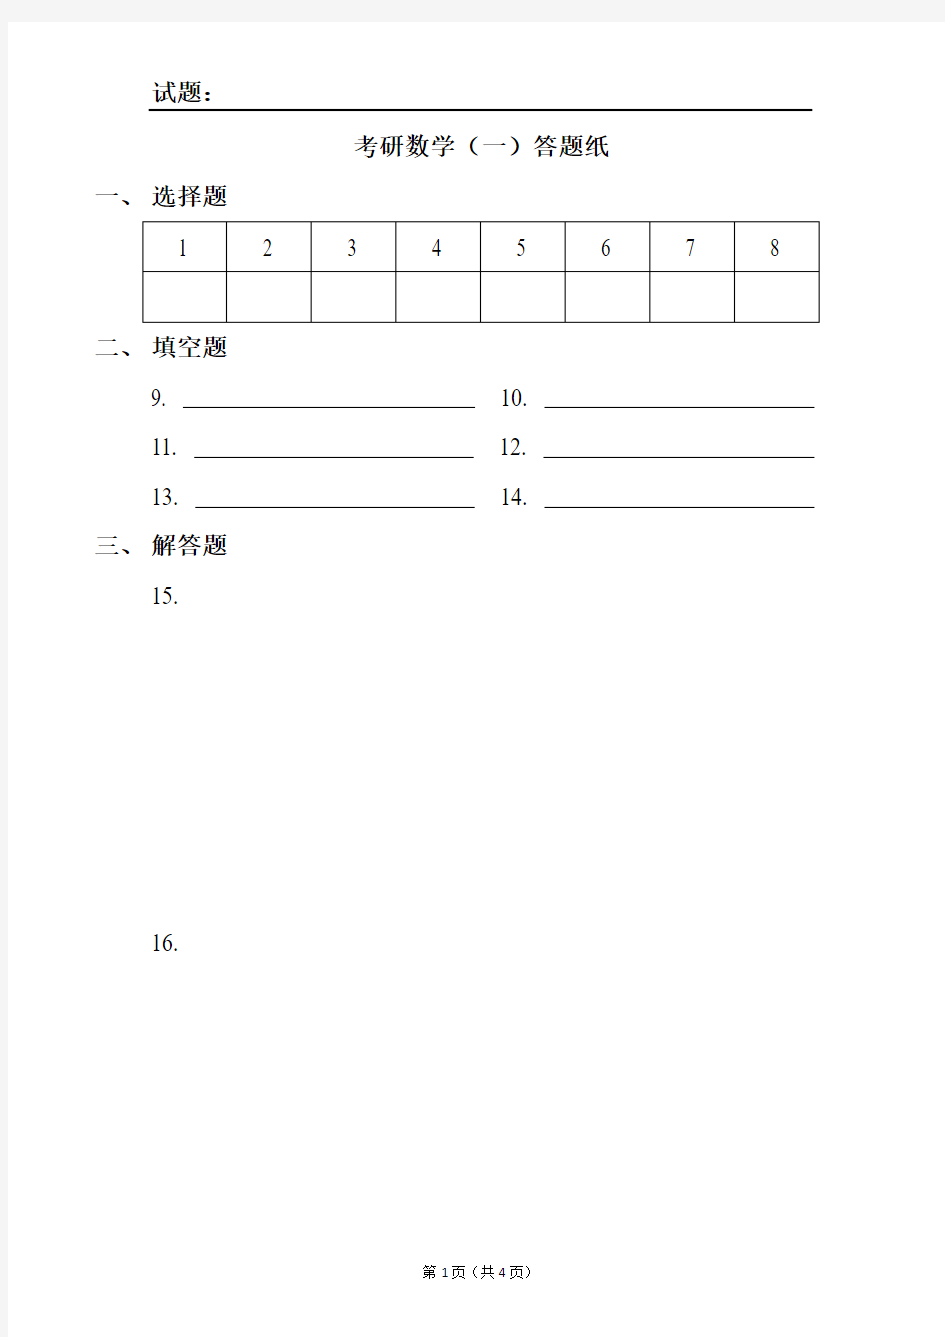 考研数学答题卡(自制完美打印版).pdf